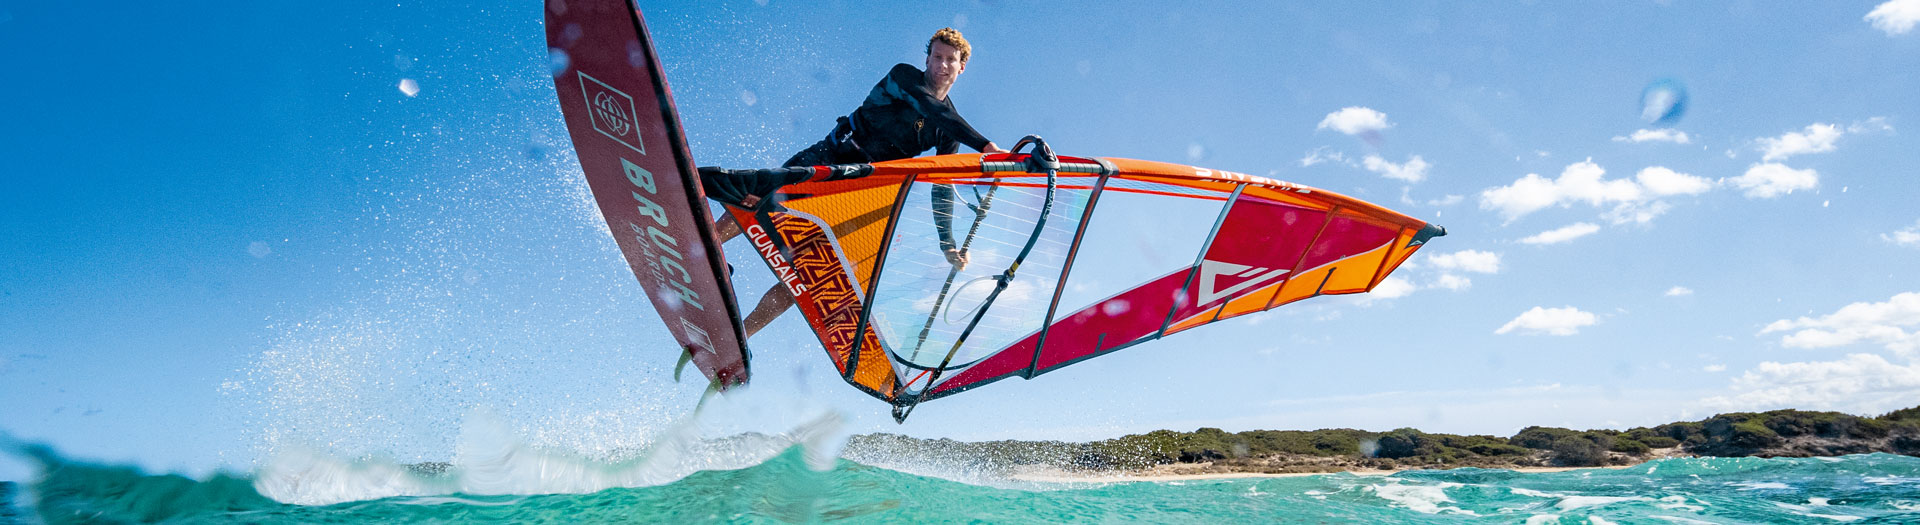 Windsurf Bump & Jump Freeride Segel Julian Salmonn Bruch Boards